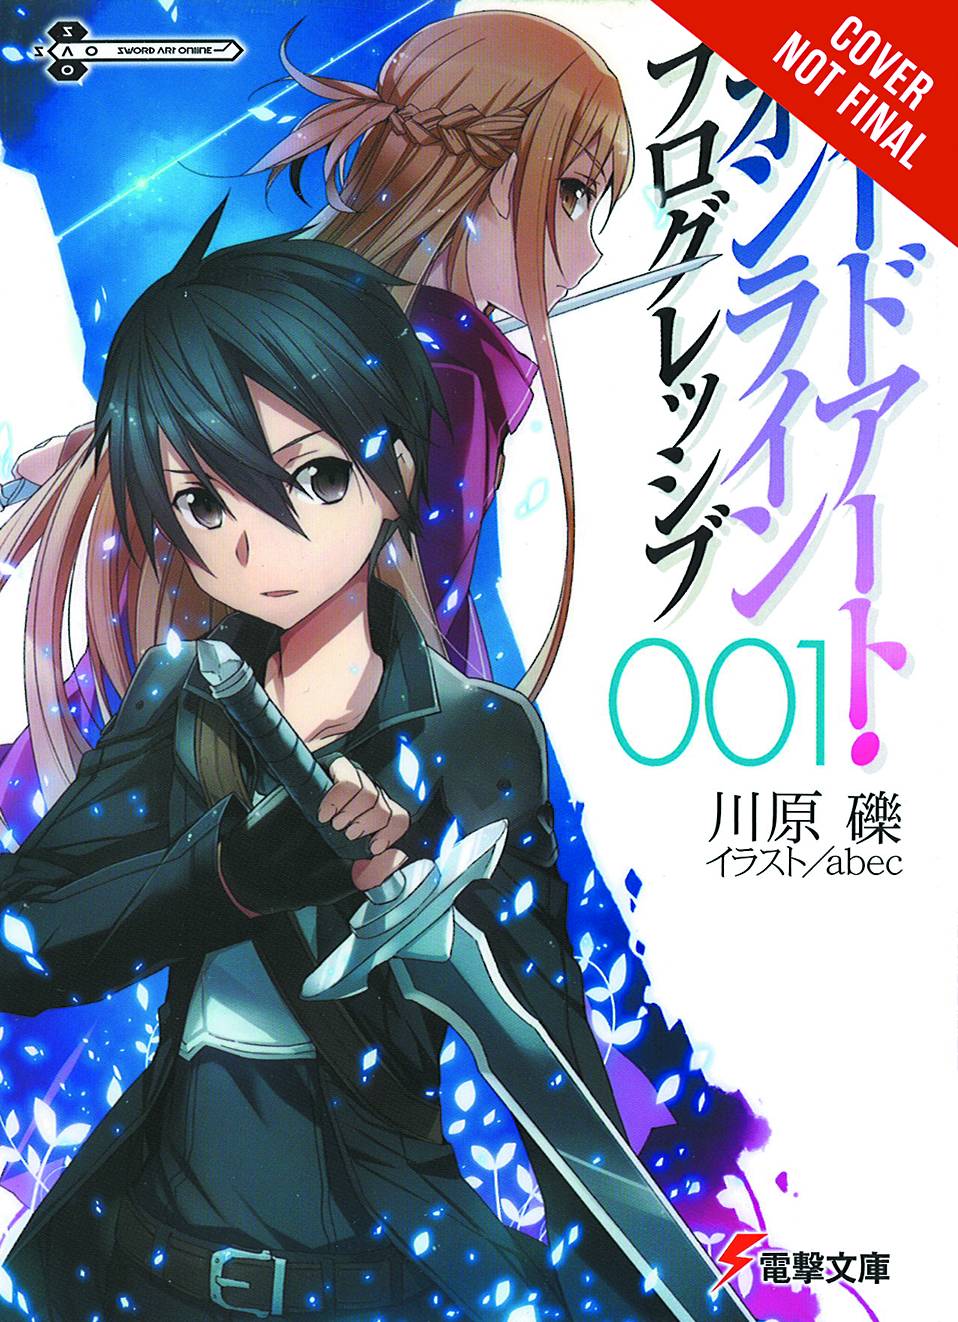 Sword Art Online Novel Progressive Volume 1